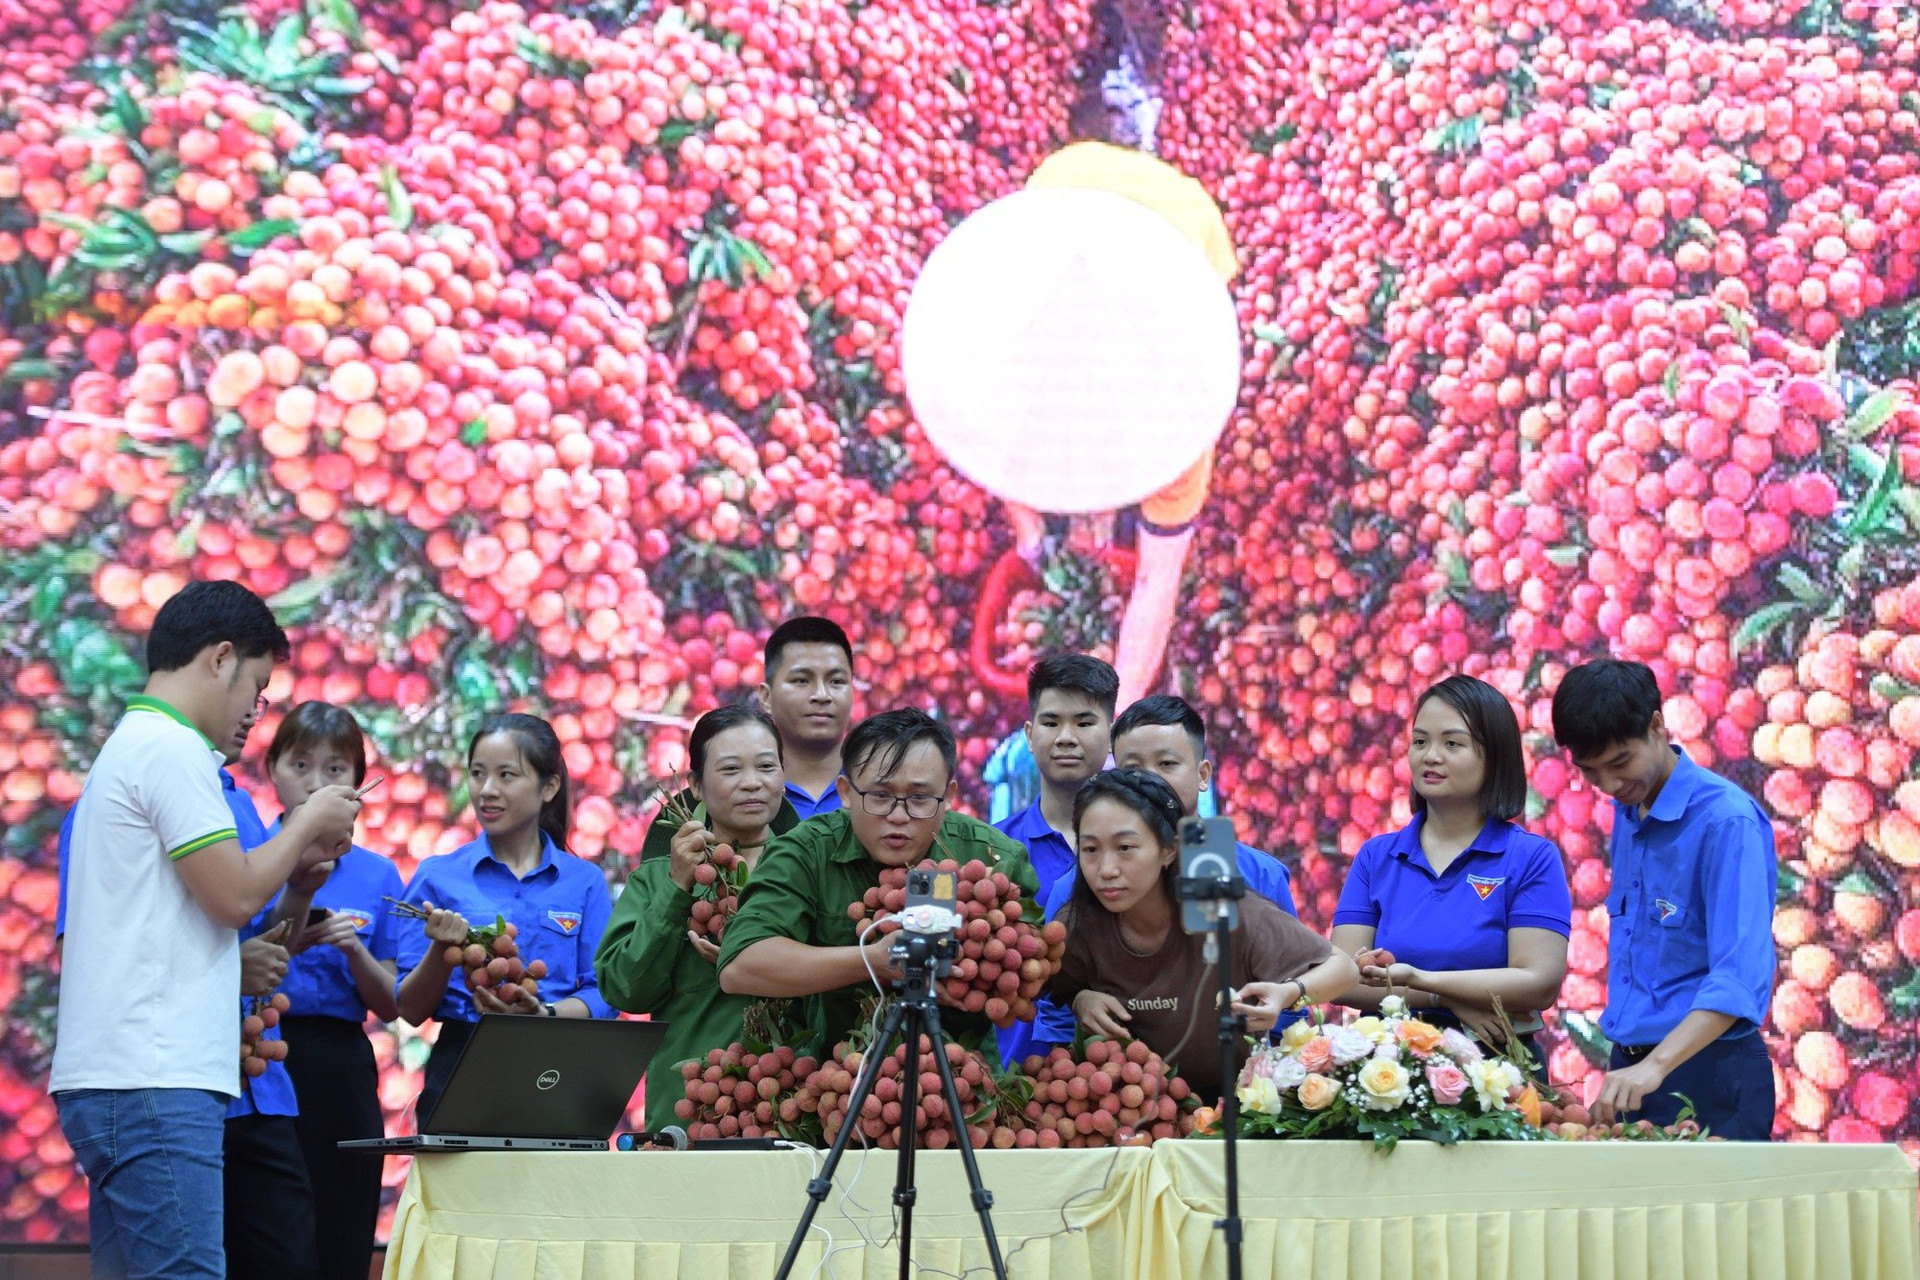 Dàn KOL TikTok livestream bán hết 23 tấn vải thiều Bắc Giang, 10 phút bán sạch mỳ Chũ, thịt gác bếp: 4 tiếng chốt hơn 5.100 đơn hàng, thu về hơn 1 tỷ đồng - Ảnh 2.